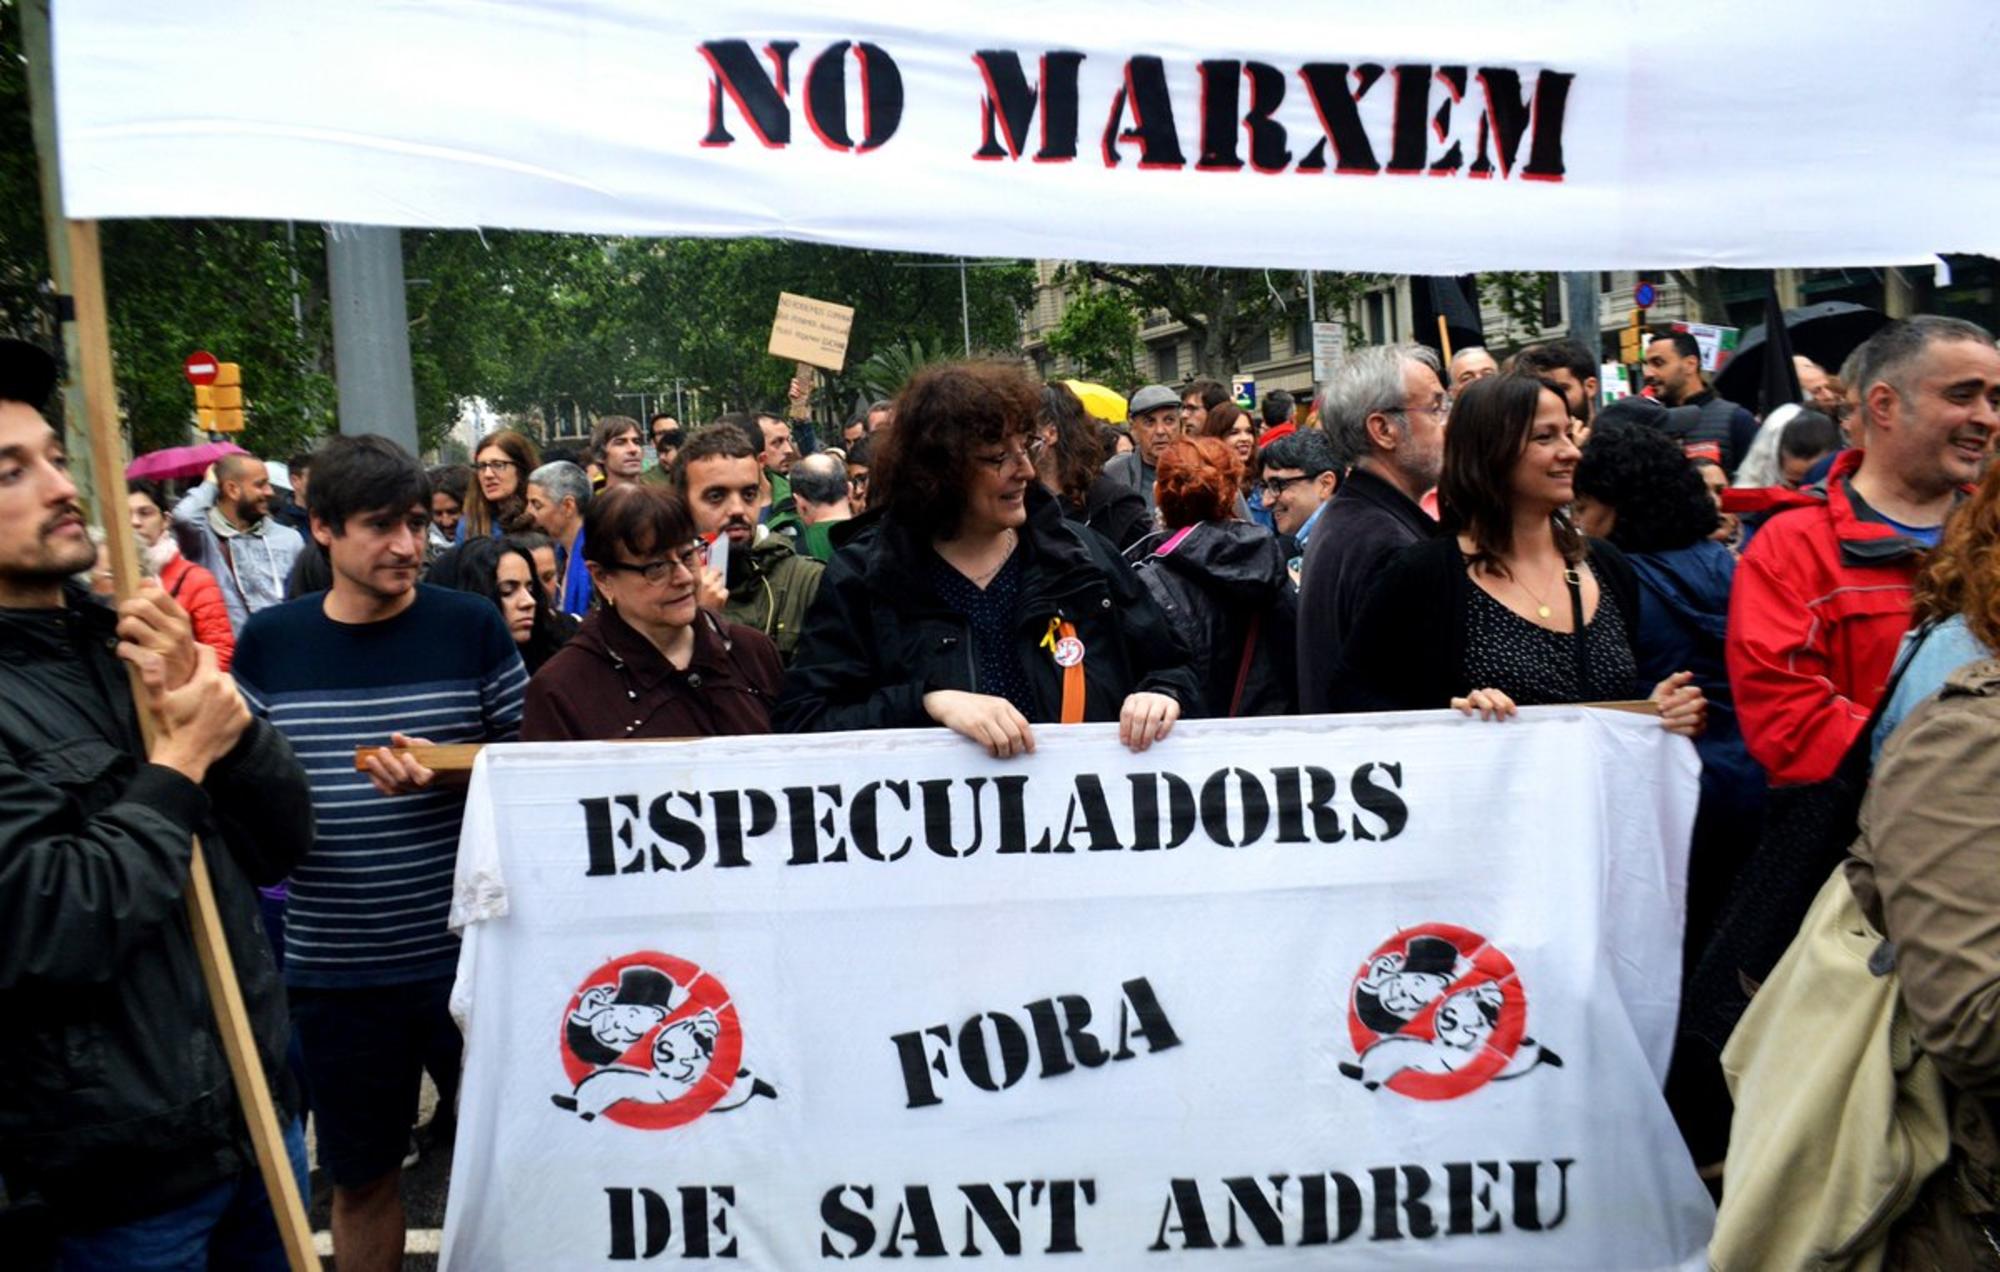 La lucha vecinal de la comunidad No Marxem y el barrio de Sant Andreu, en Barcelona, ha dado sus frutos.